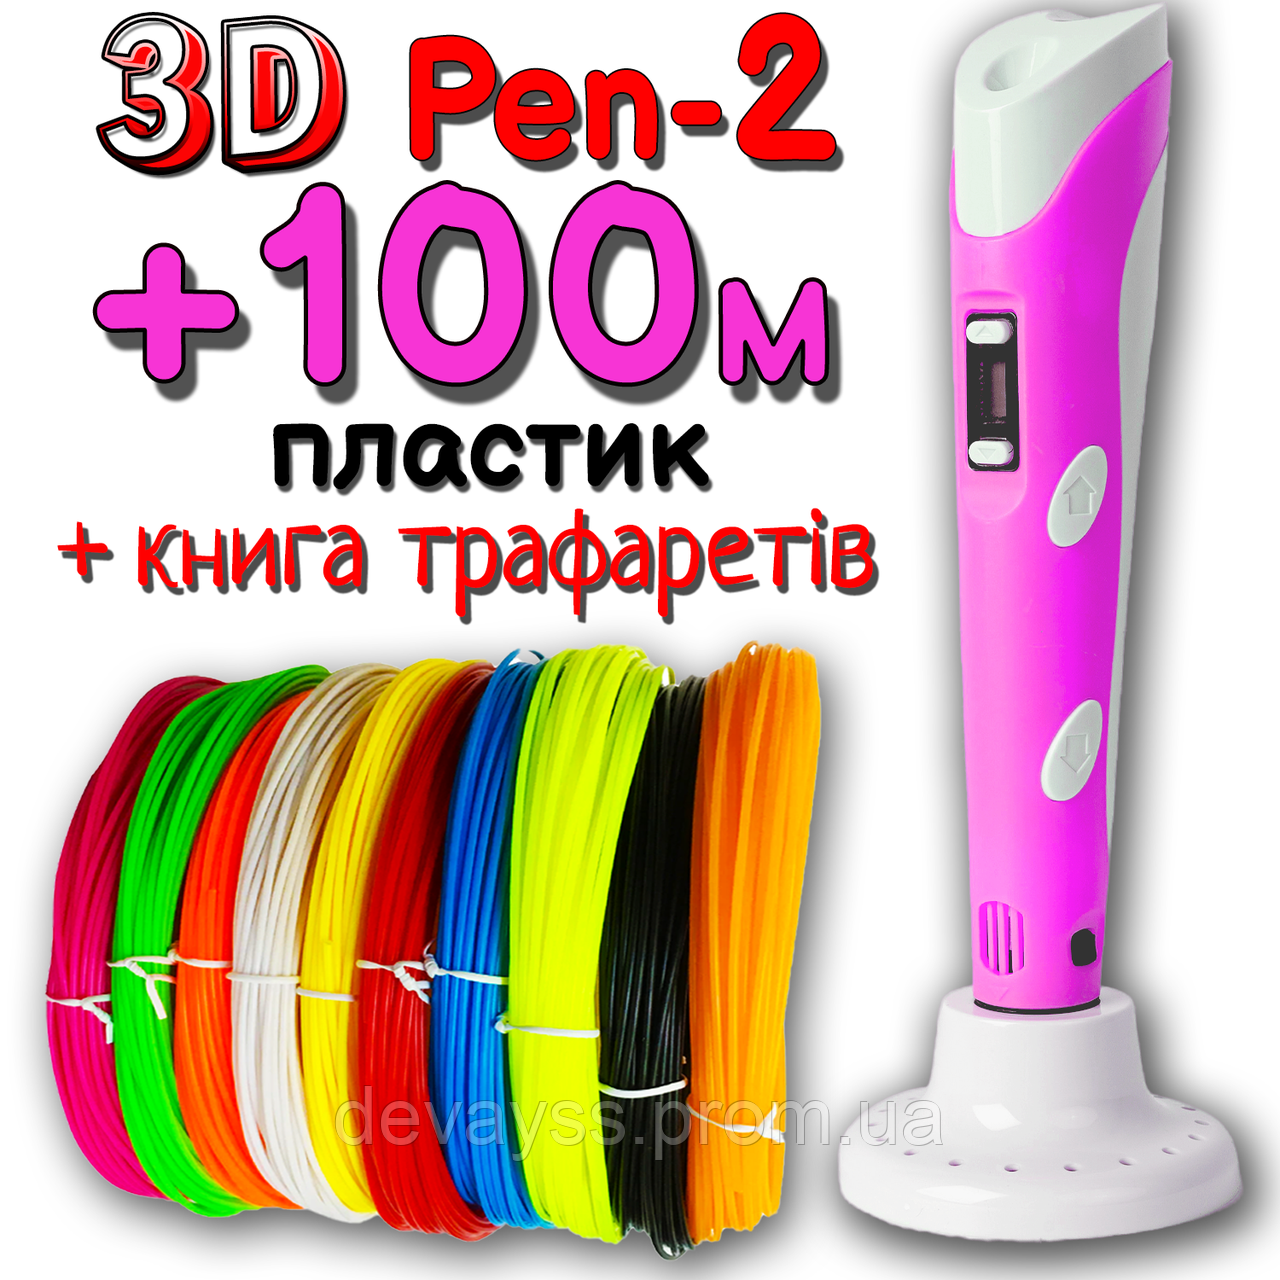 100 метрів пластику + трафарети у подарунок! 3D Ручка Pen-2 із LCD-дисплеєм Рожева для малювання! 3Д ручка